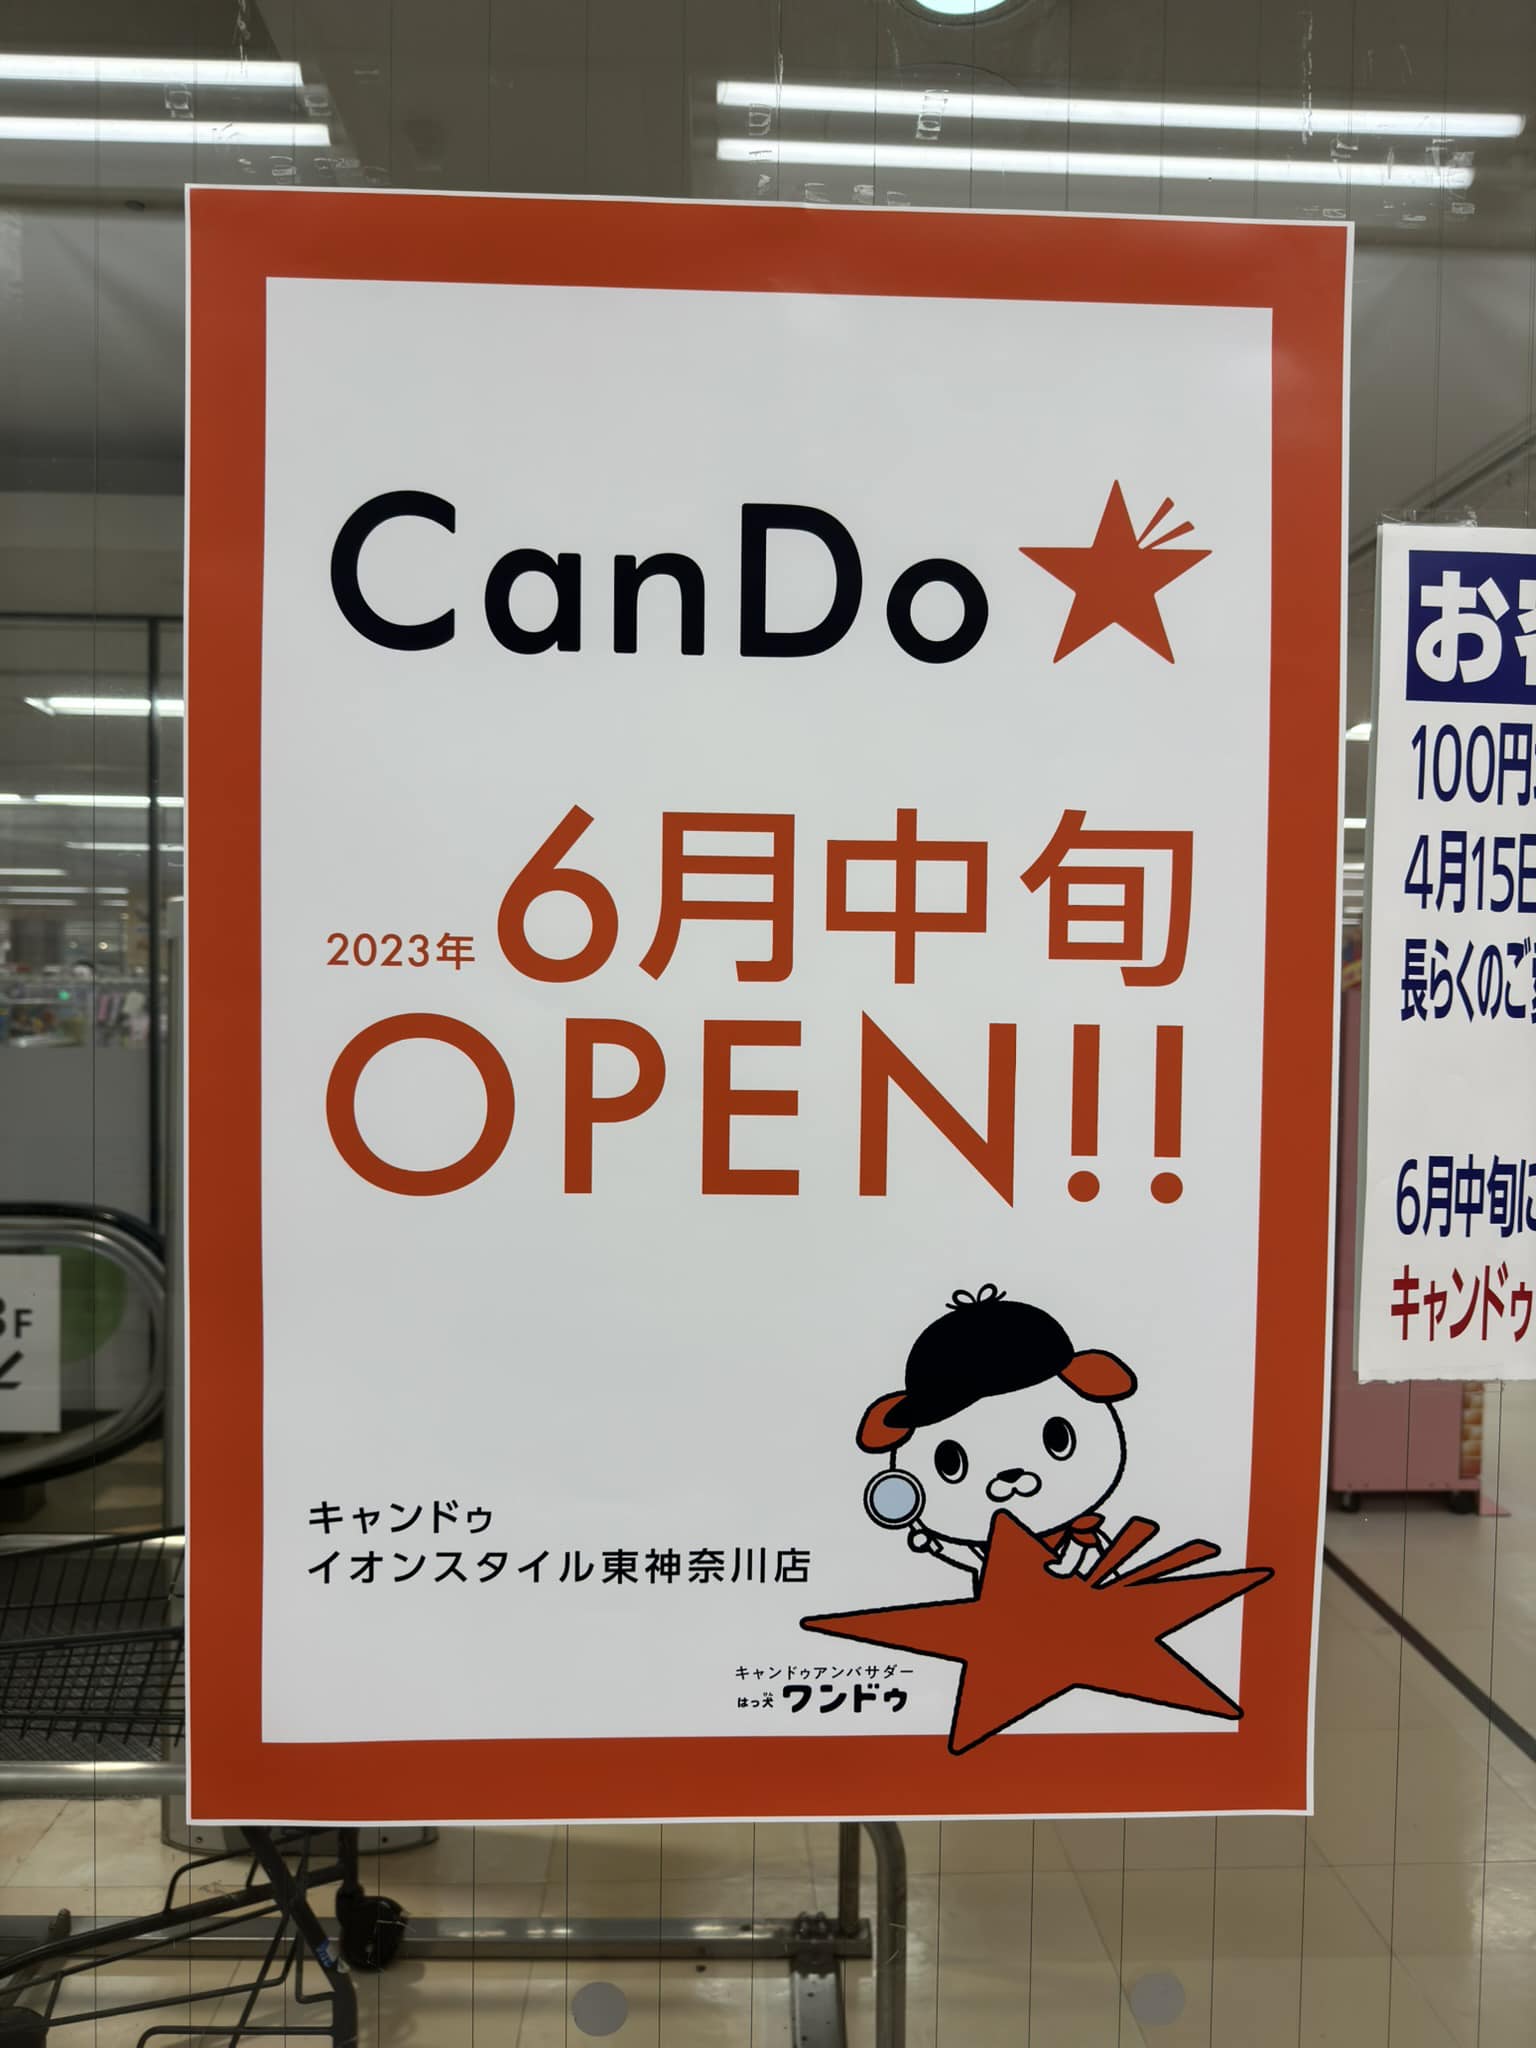 先日閉店した百均の跡地にCanDoが入るとな品揃えはCanDoの方が良さげだな (Instagram)